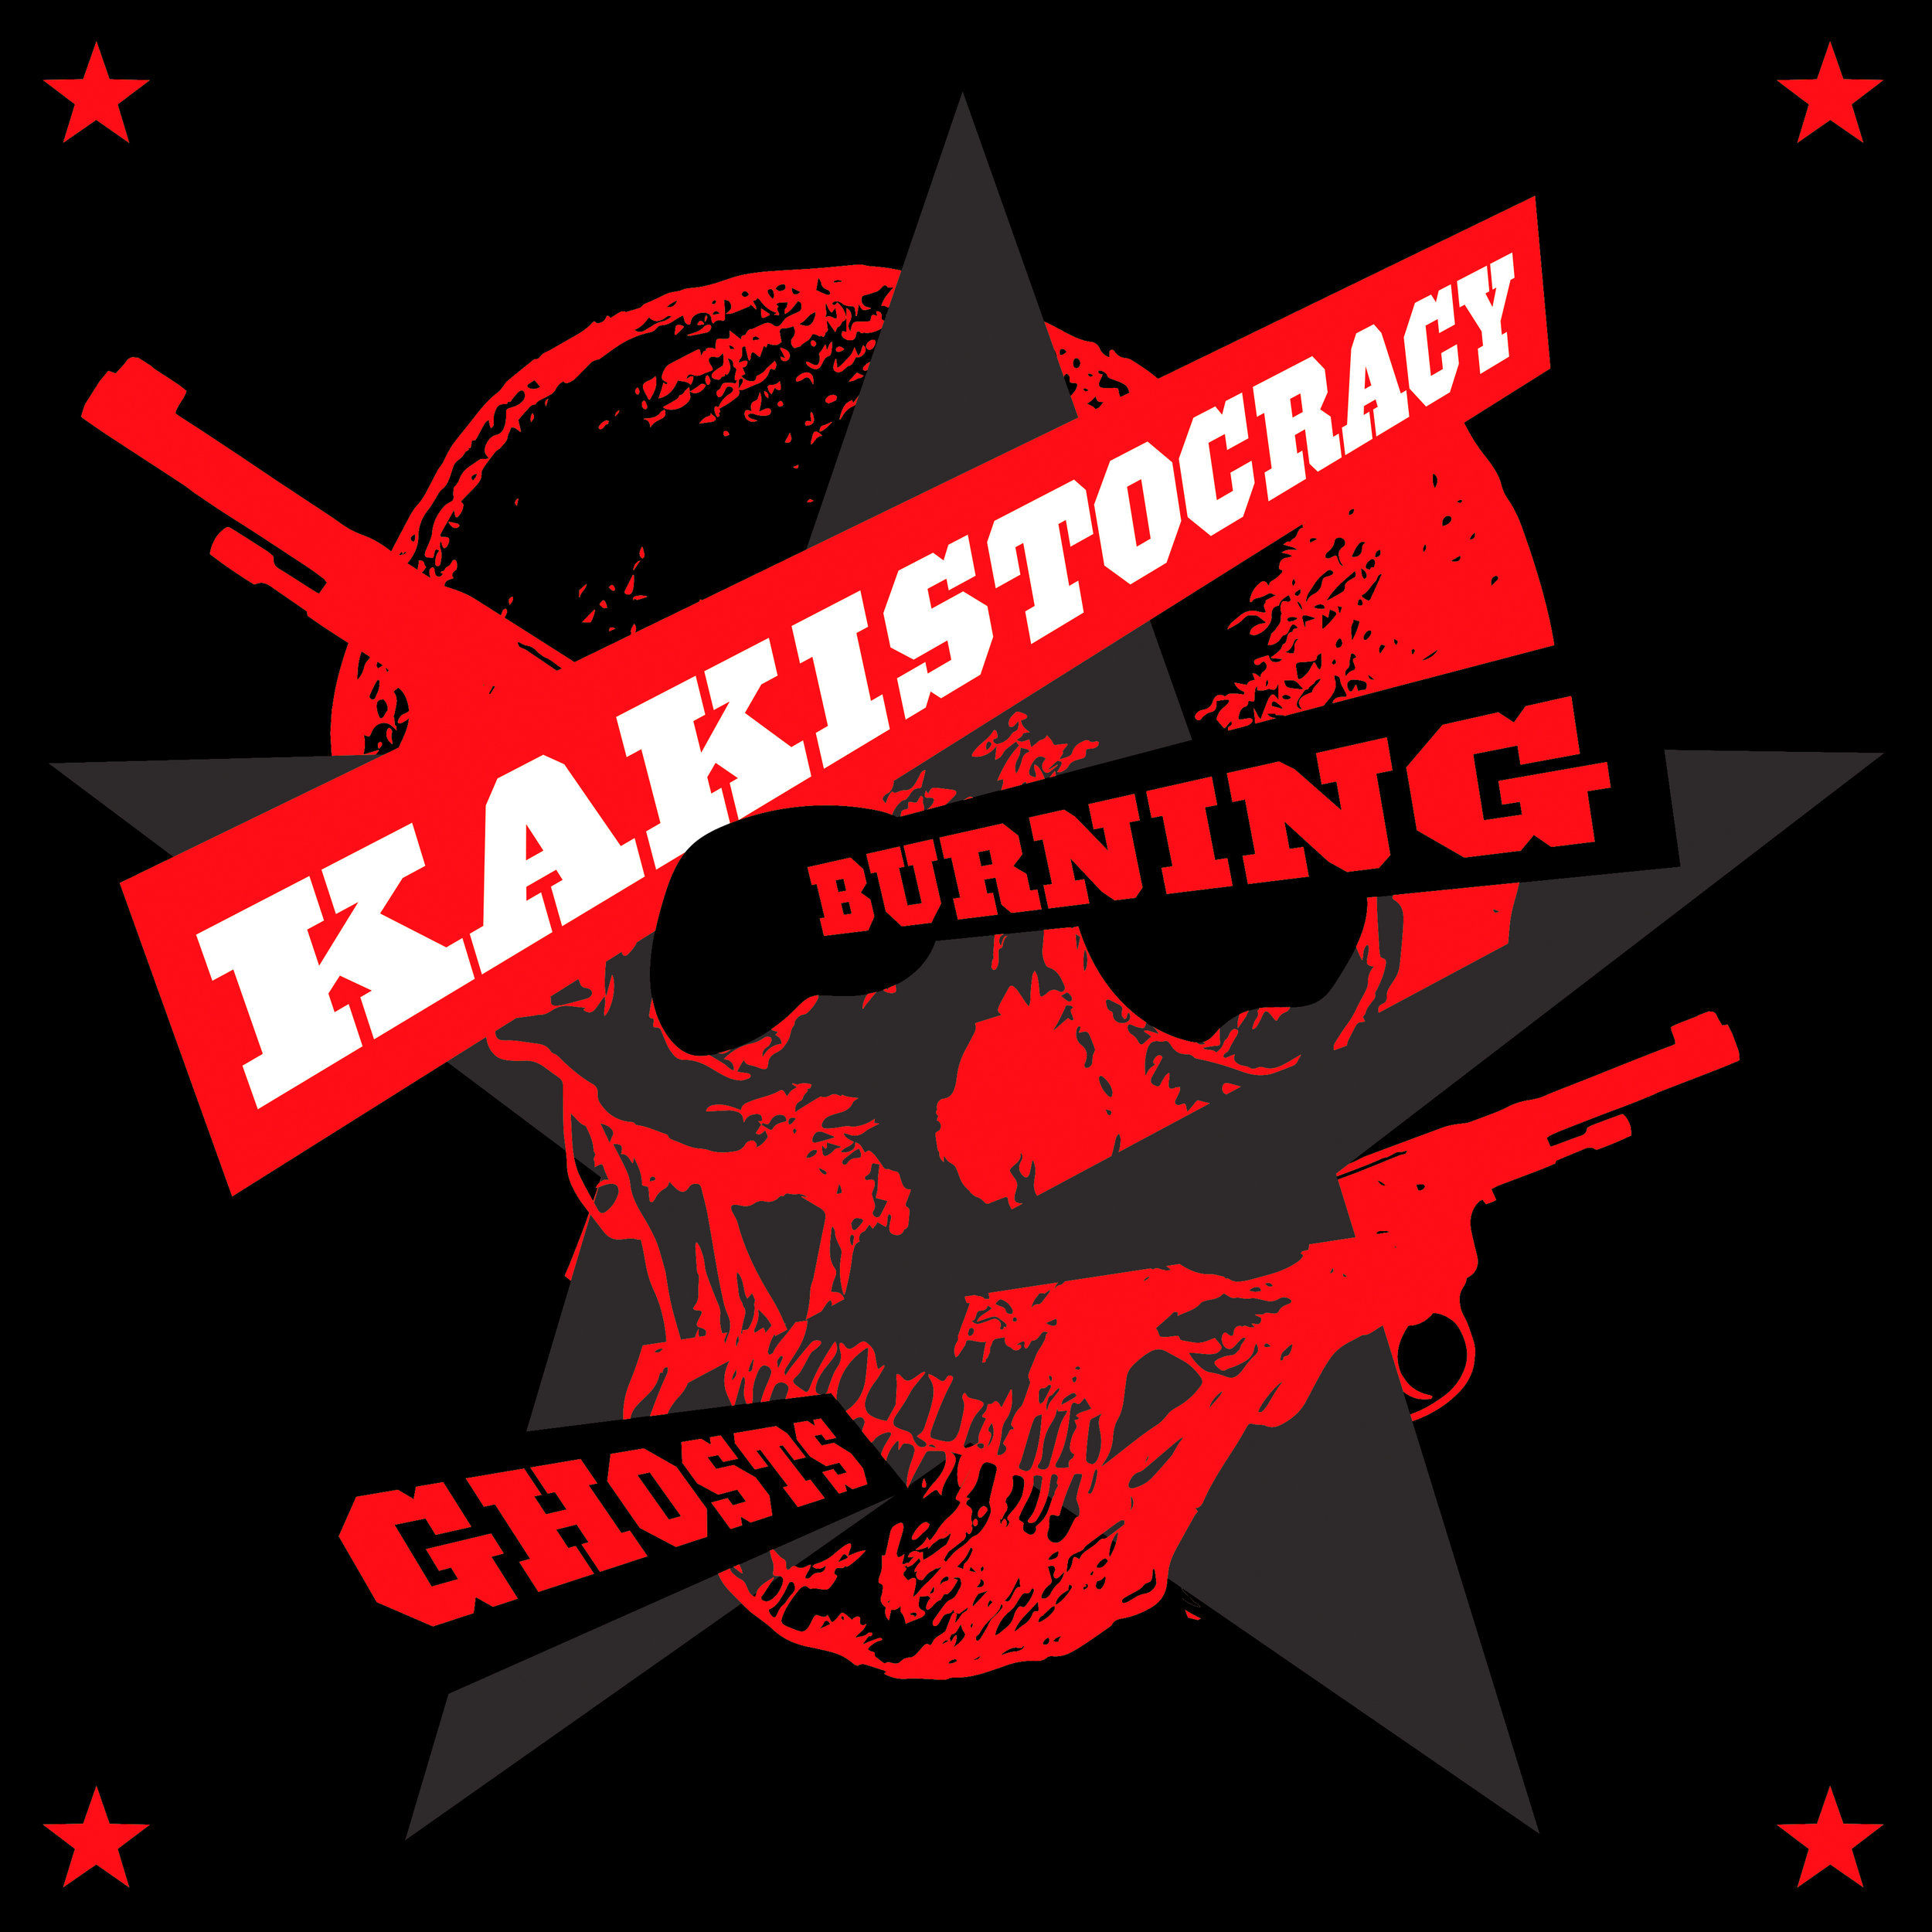 Burning Ghosts: Kakistocracy